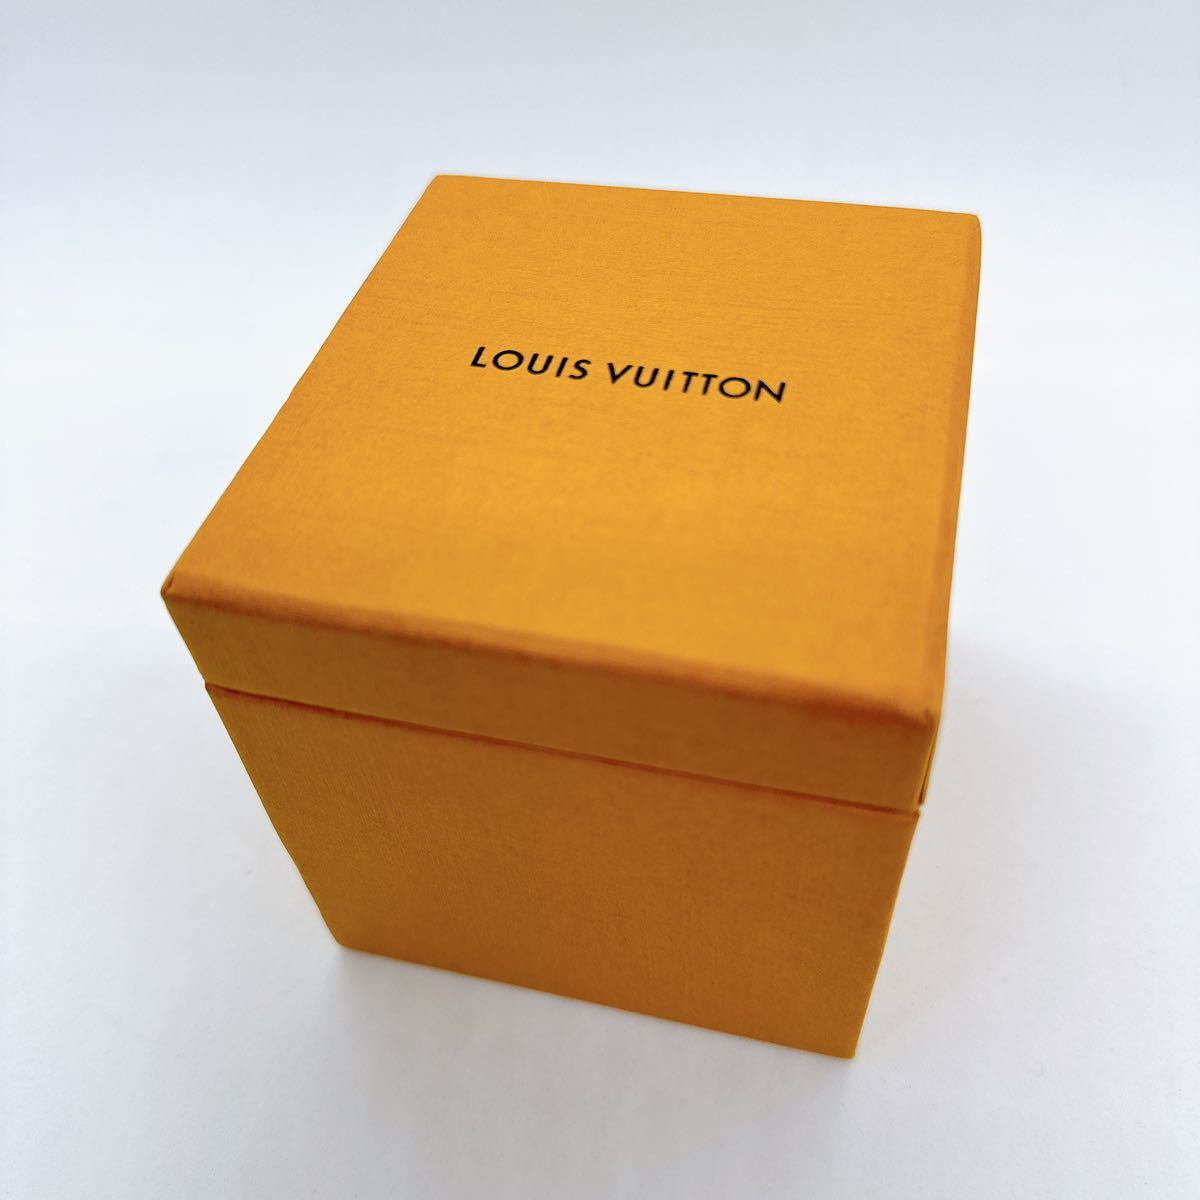 12146 ルイヴィトン LOUIS VUITTON 箱 ケース ボックス アクセサリーケース ジュエリーケース ネックレス